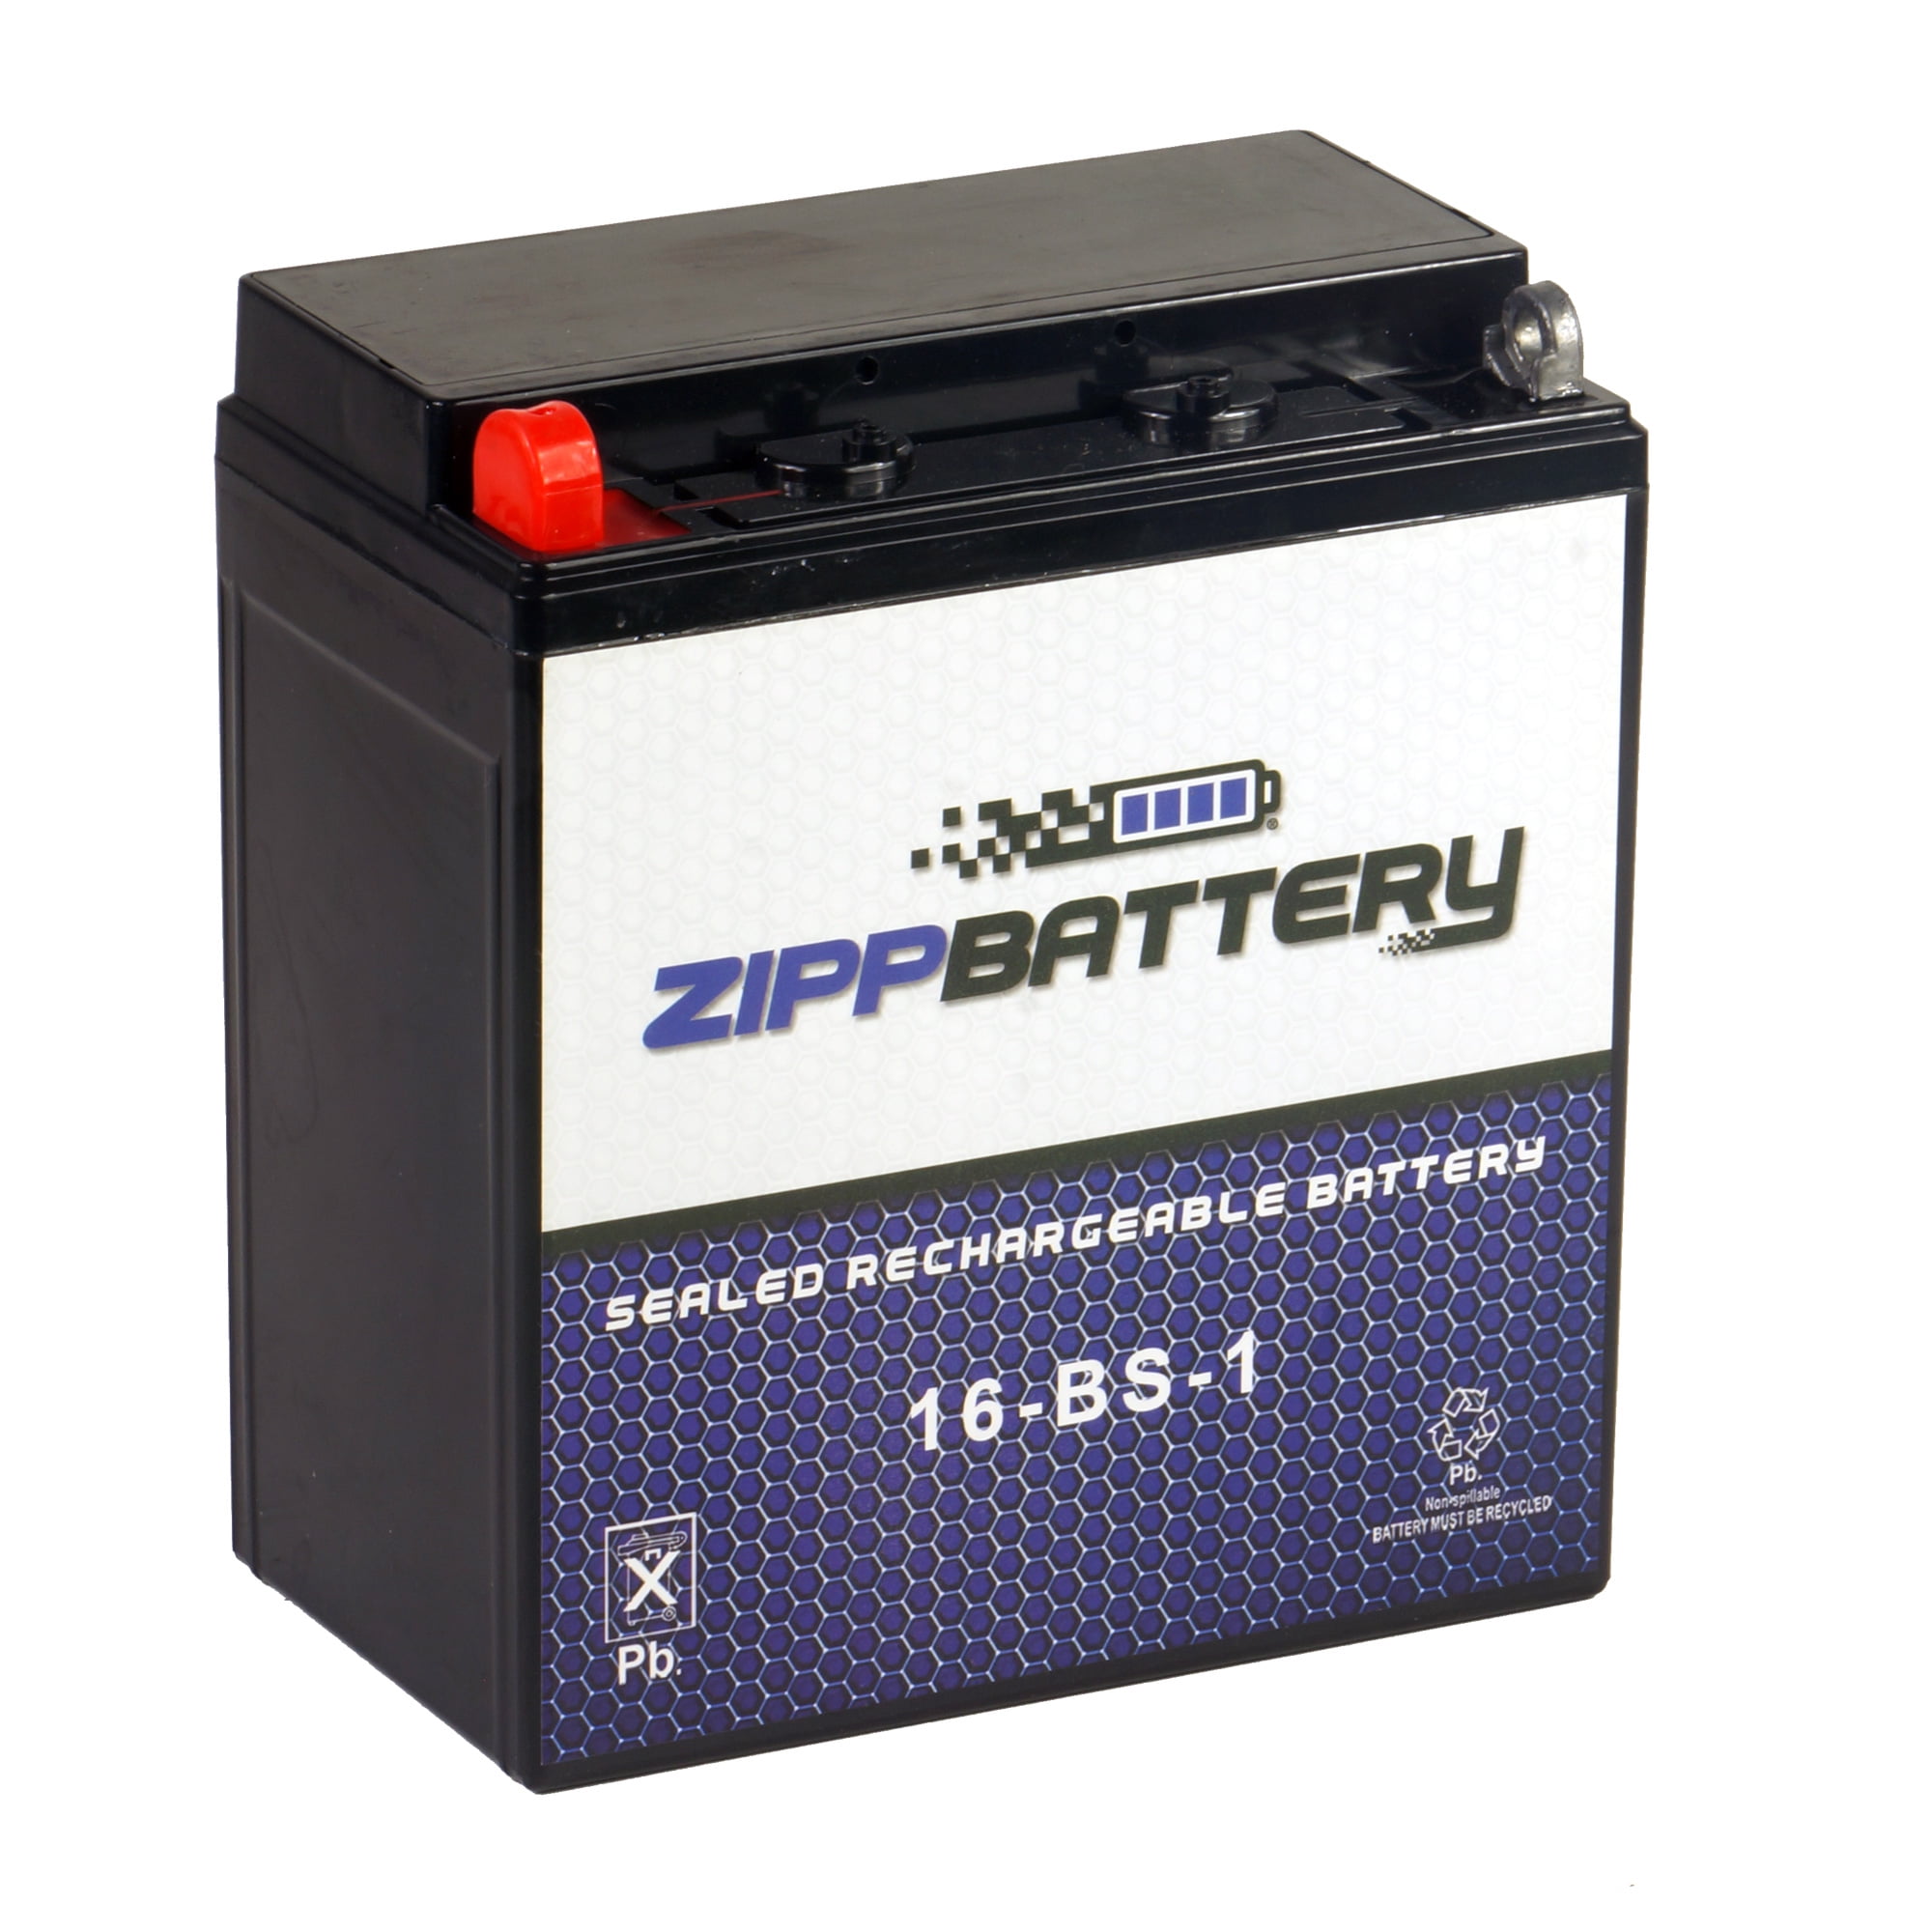 Suzuki VS 1400 GLF Intruder-BJ 1987-2003 67/61 PS-Batterie lithium-ion